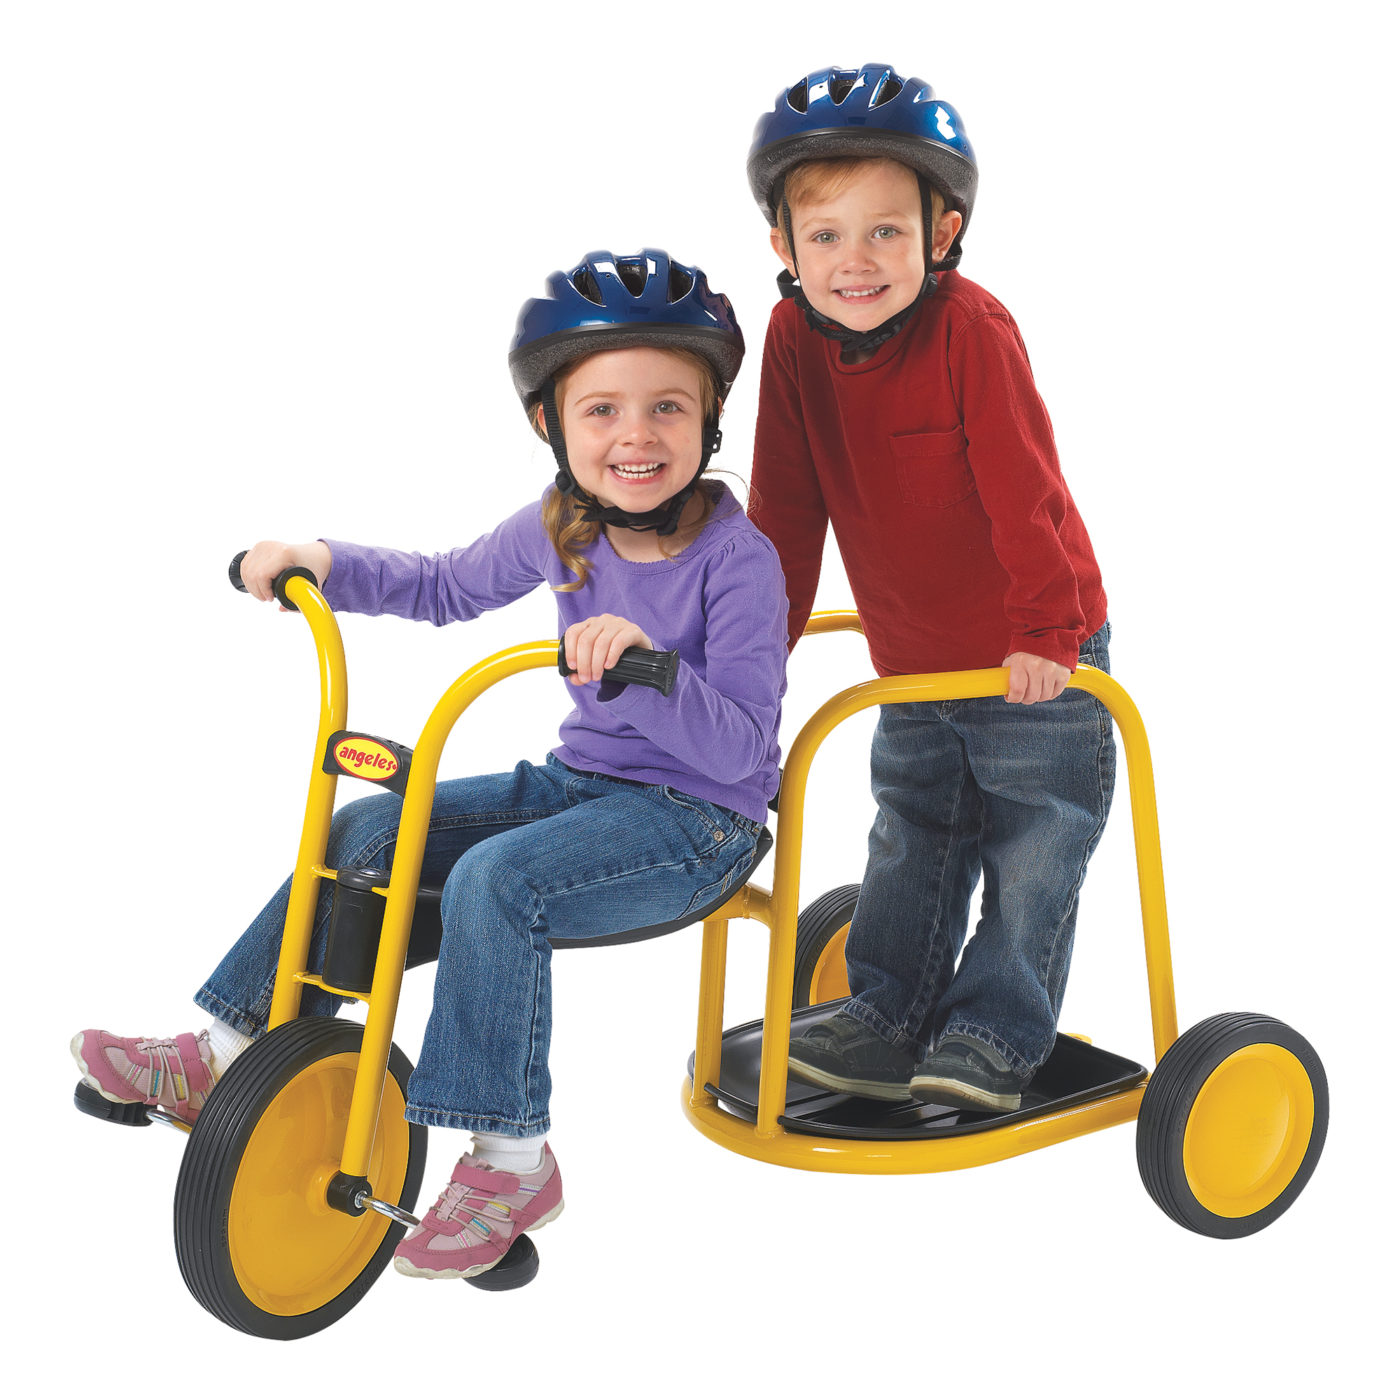 MyRider® Chariot - Children's Factory